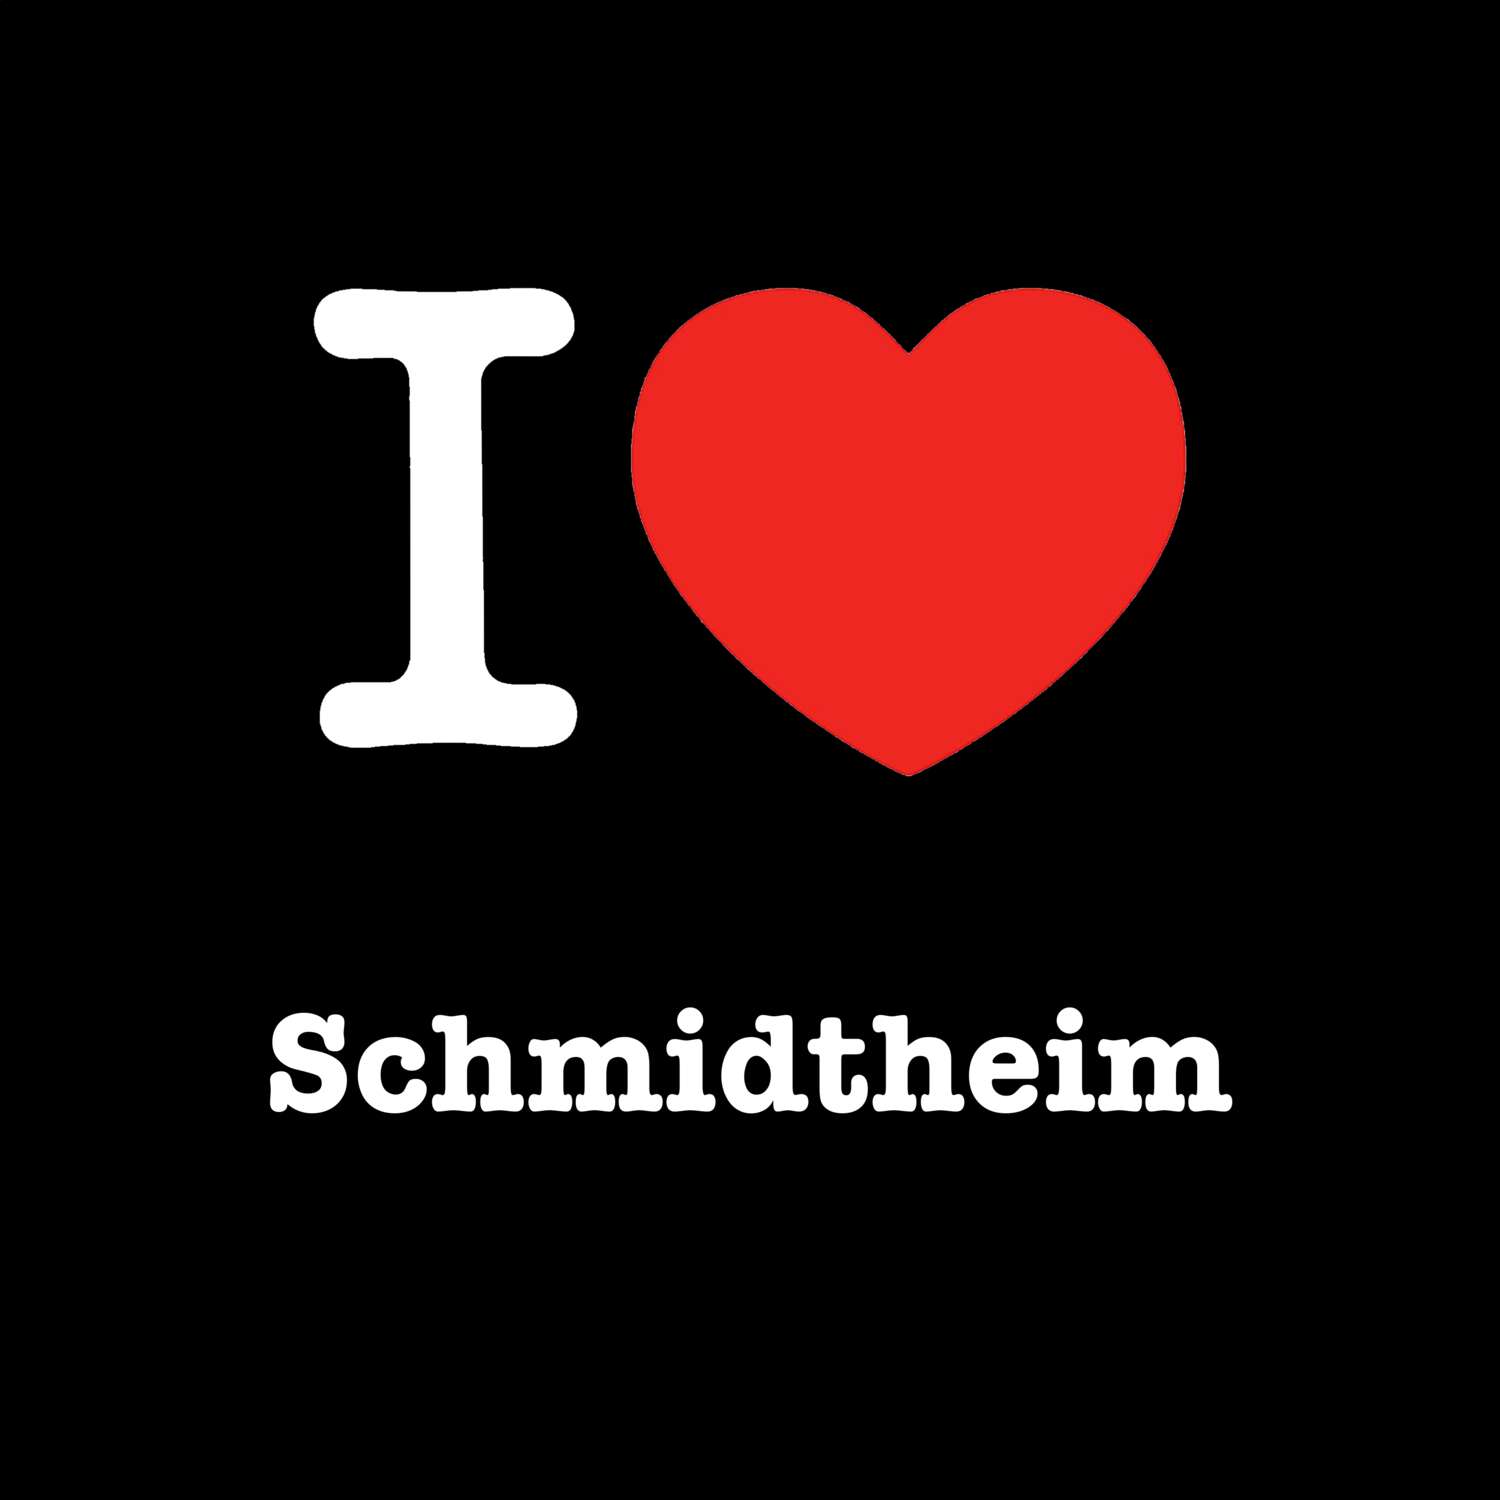 Schmidtheim T-Shirt »I love«